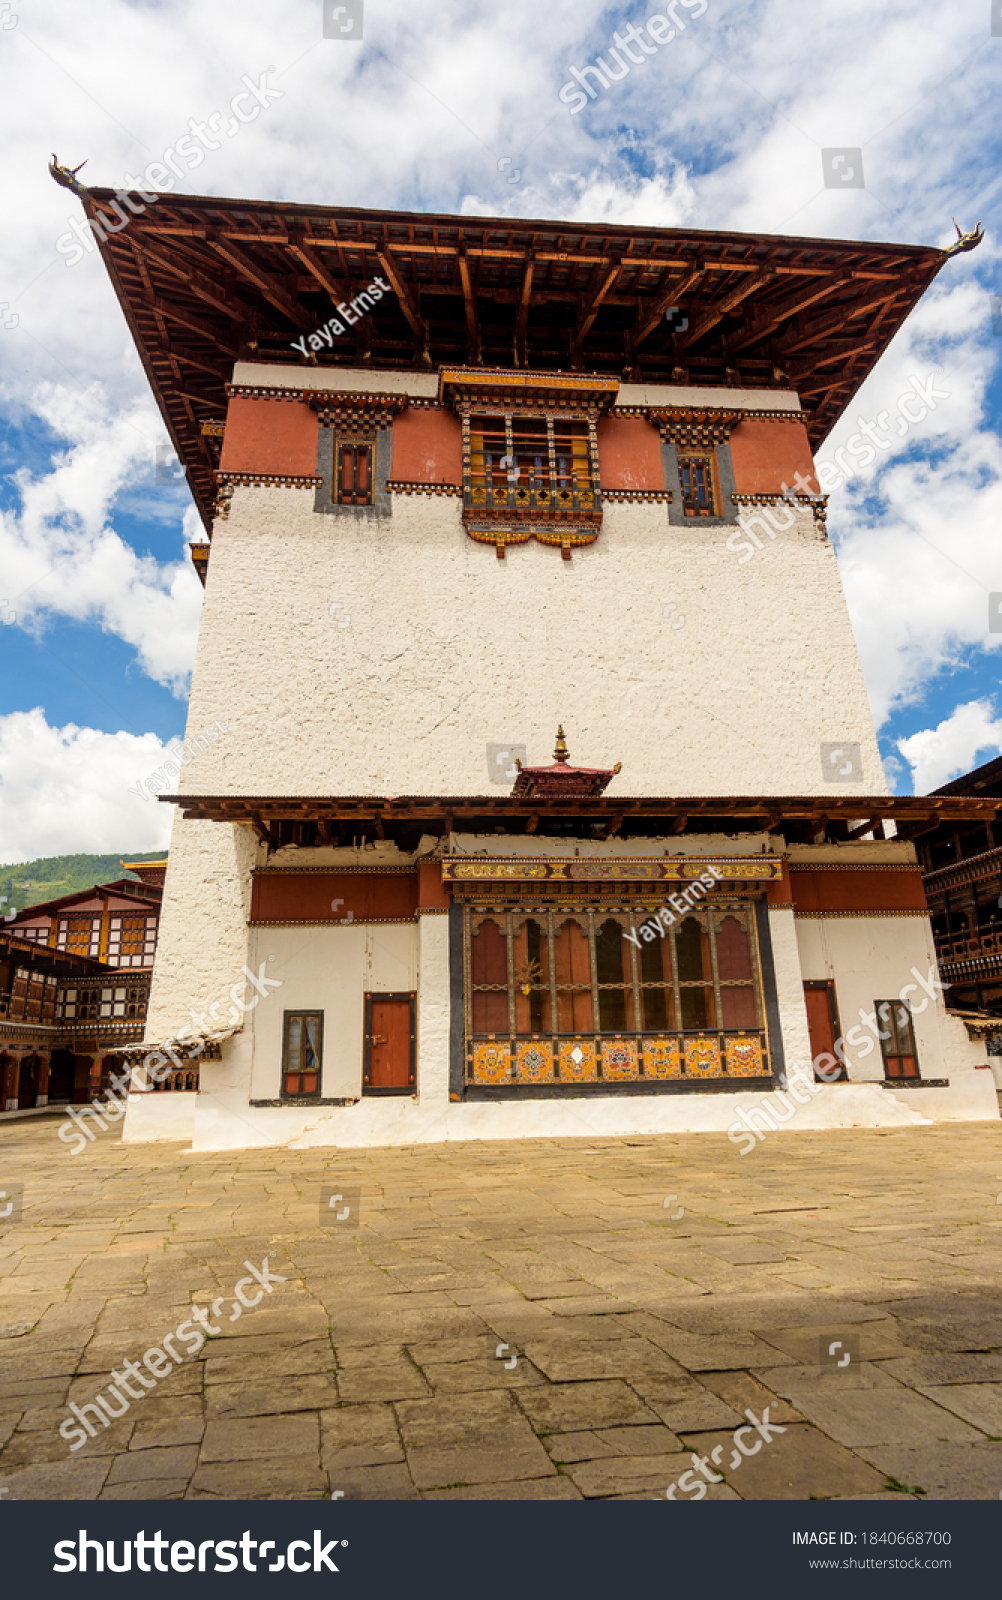 Bhutan, Paro, Rinpung Dzong. Bhutanese architecture around 15th century Buddhist monastery and fortress, Government Building #1840668700